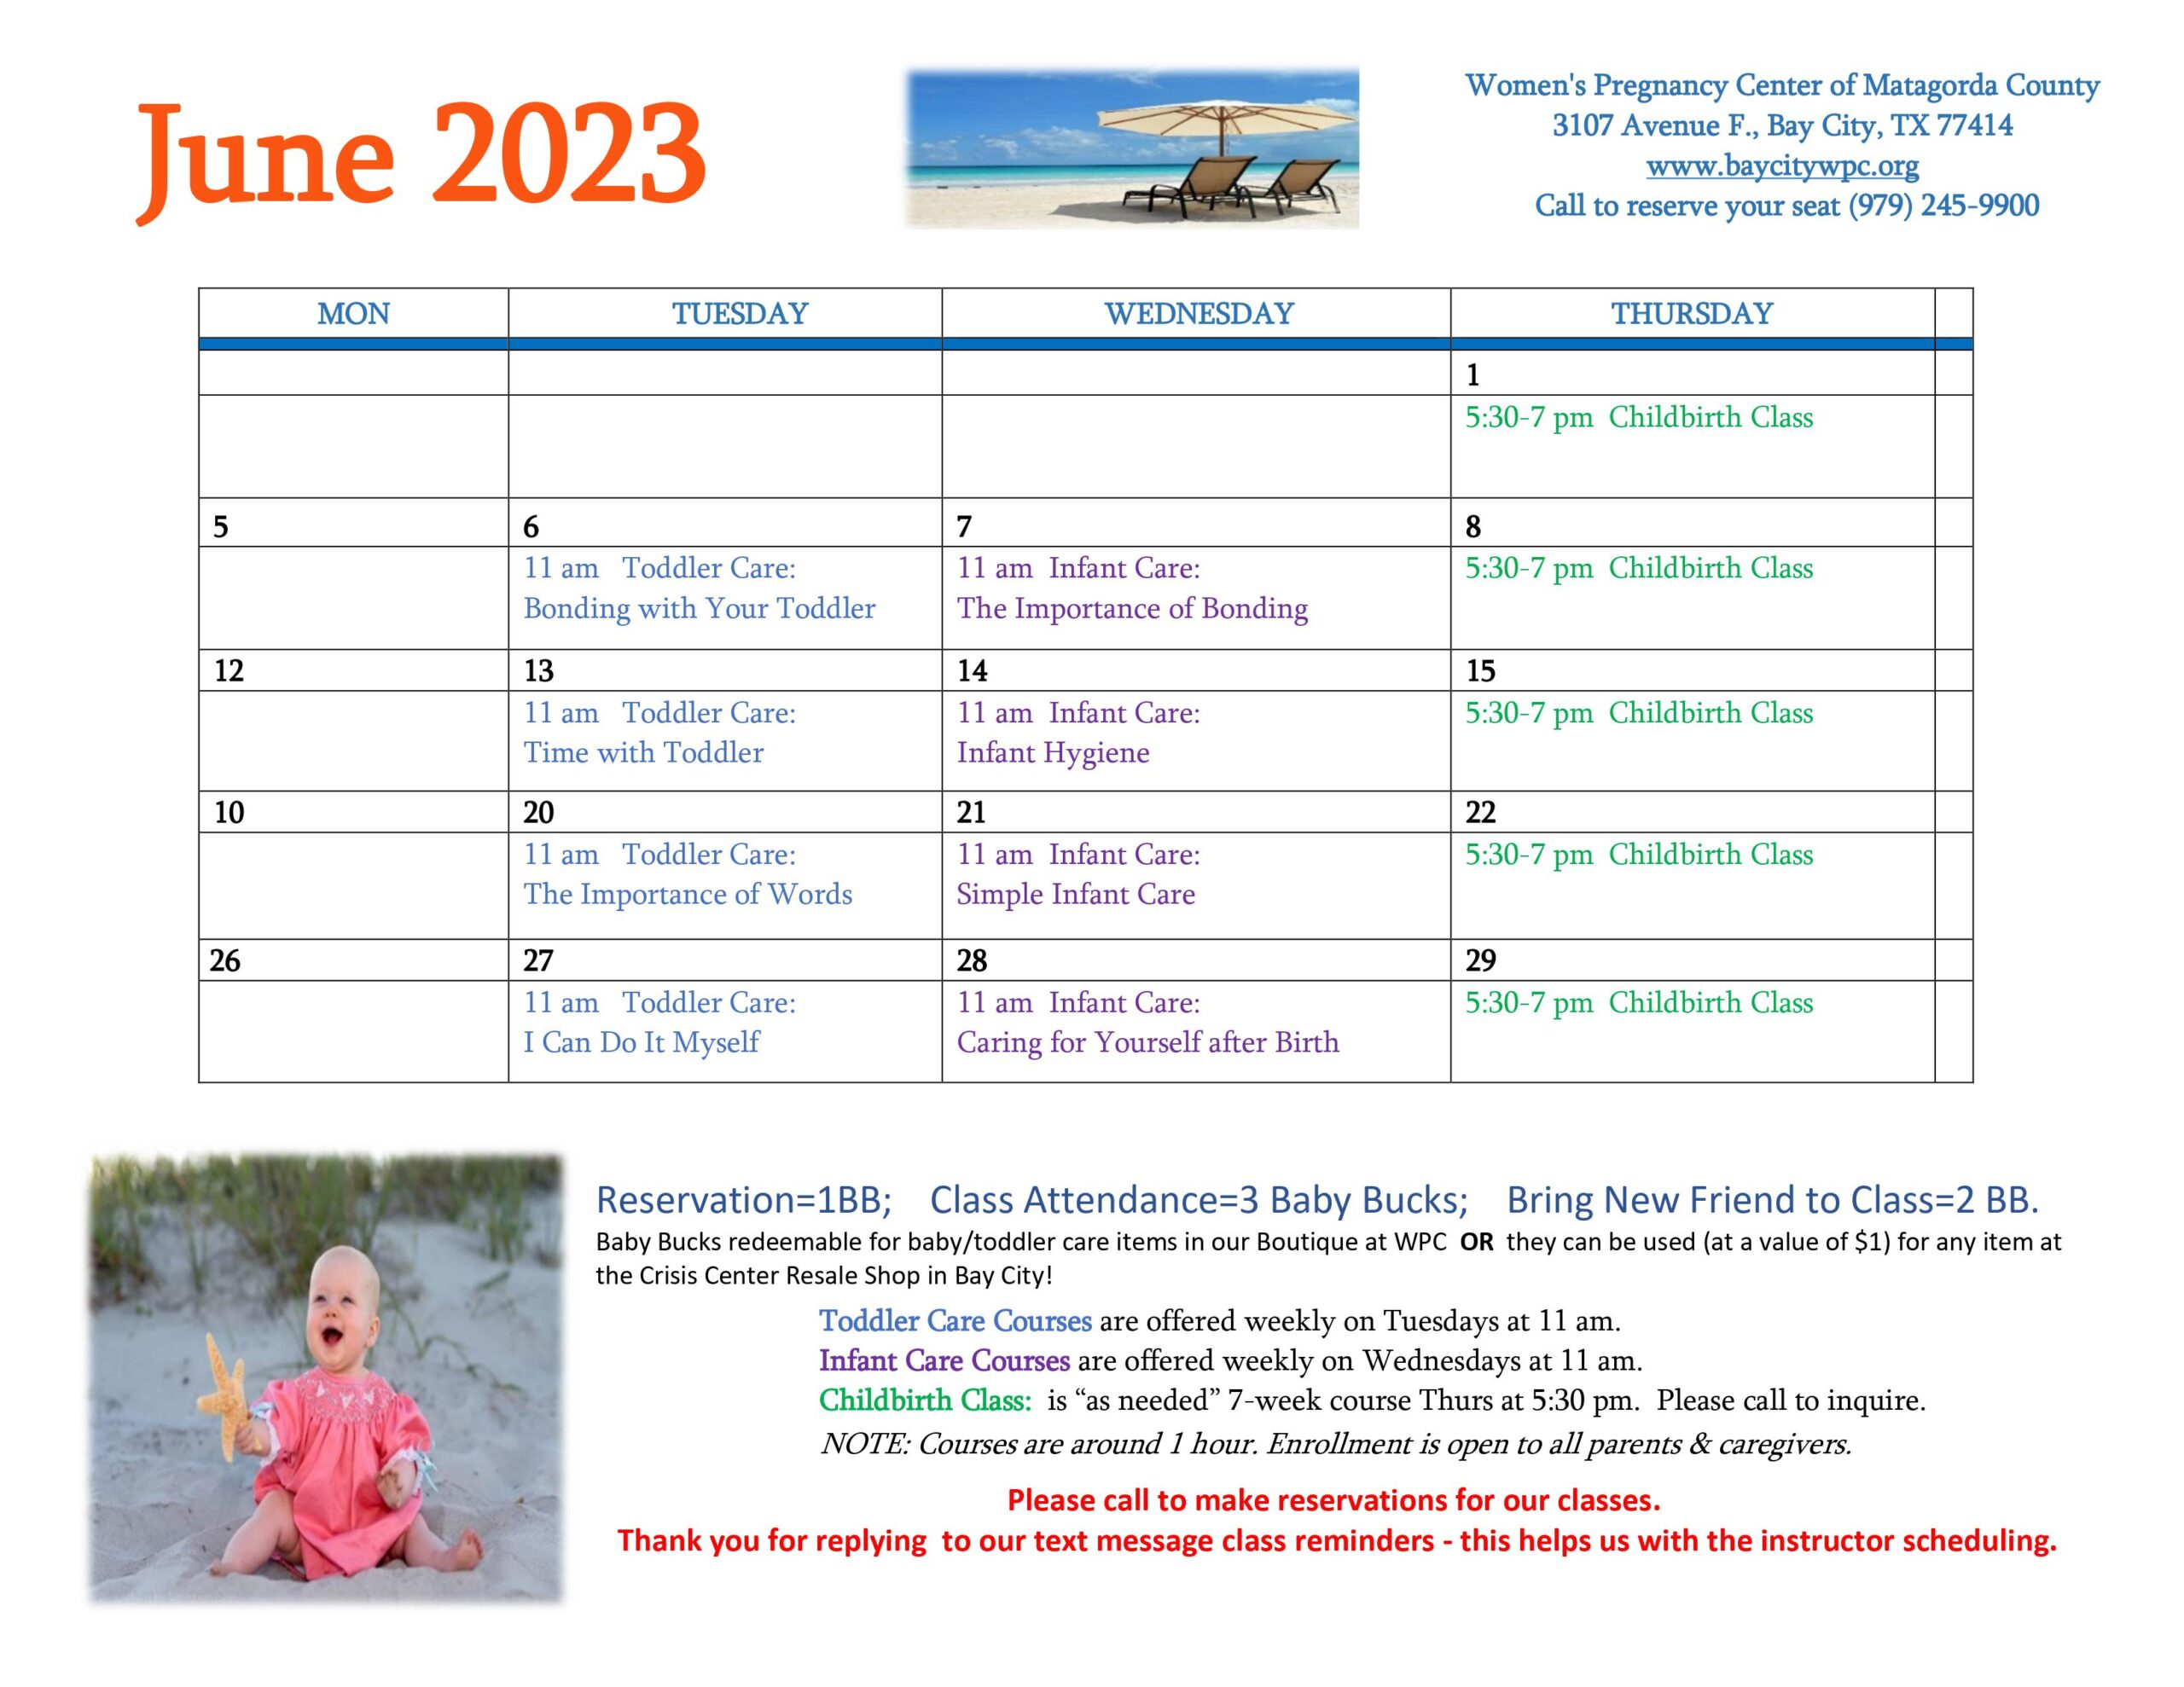 WPC April 2021 Calendar